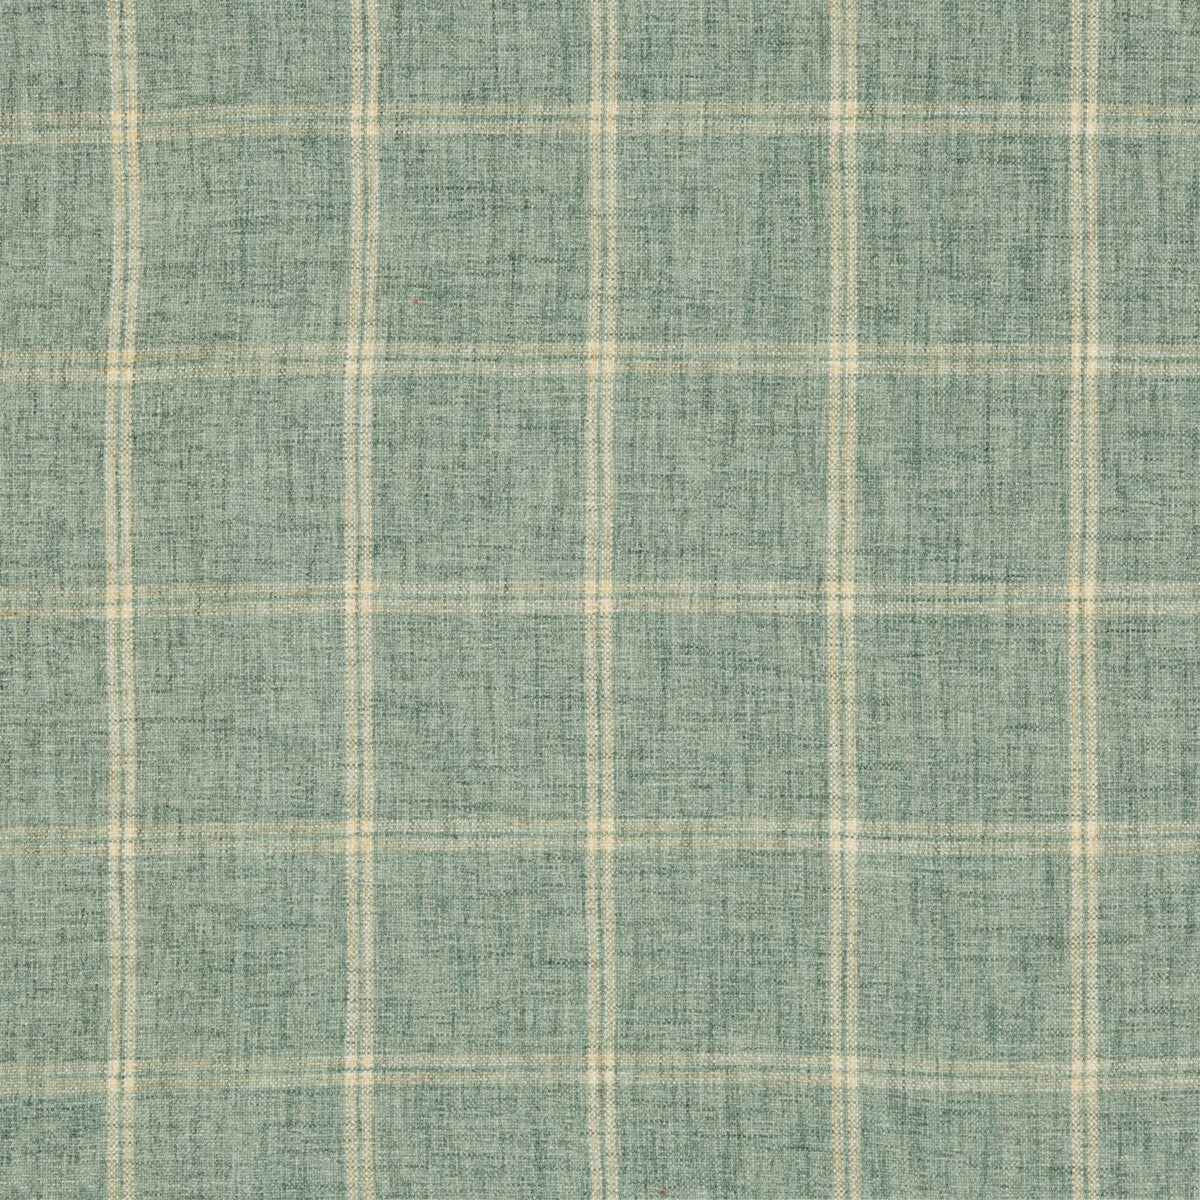 Kravet Basics fabric in 35774-323 color - pattern 35774.323.0 - by Kravet Basics